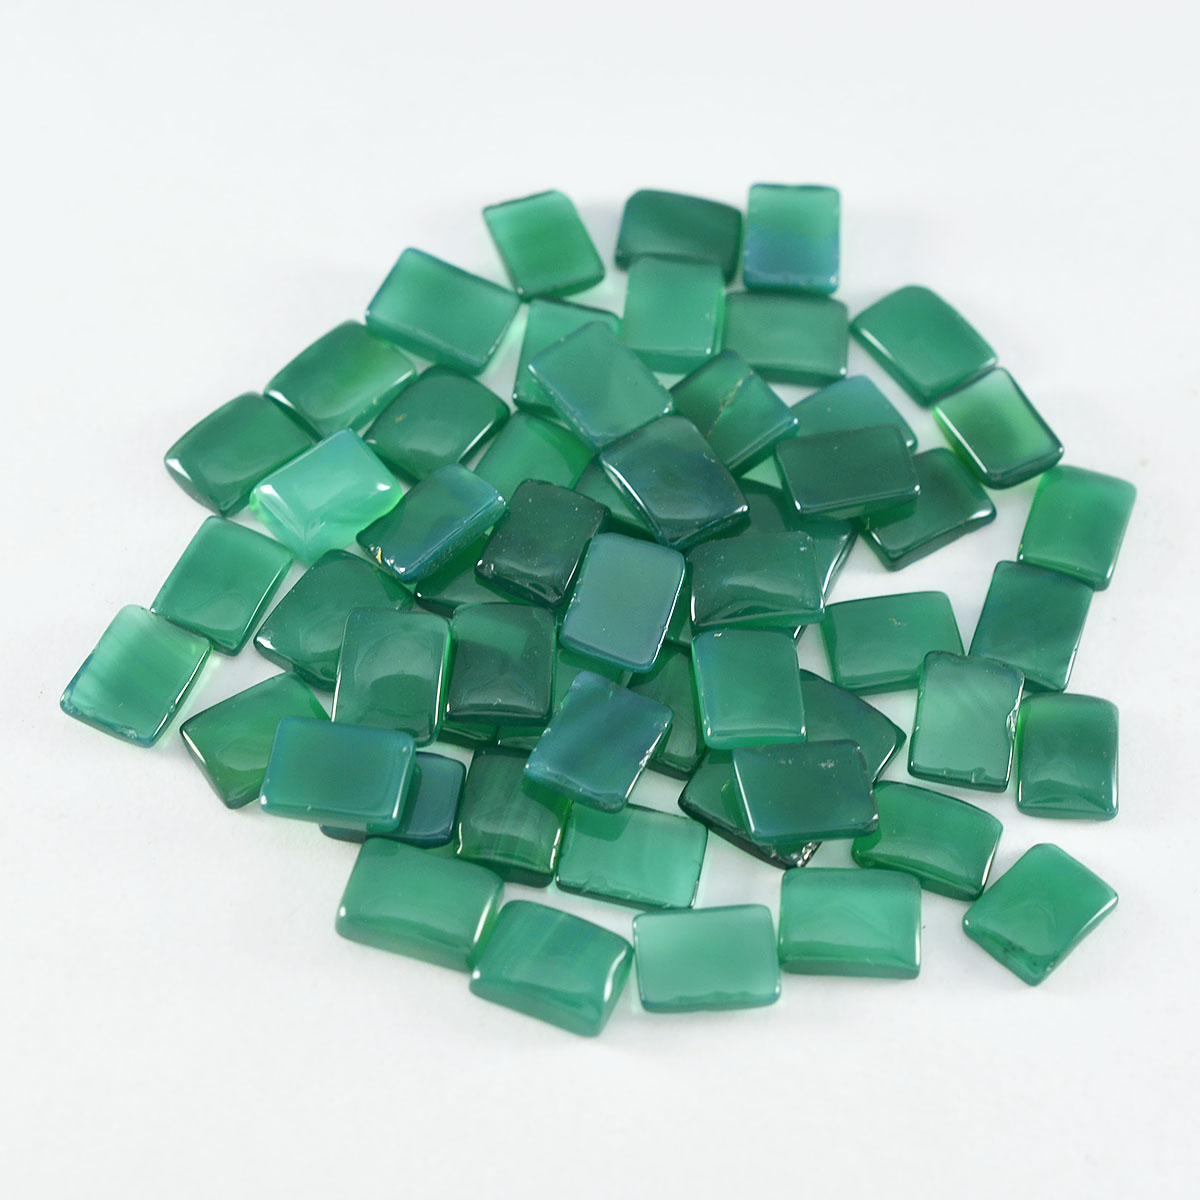 Riyogems 1PC groene onyx cabochon 5x7 mm achthoekige vorm mooie kwaliteit losse edelsteen